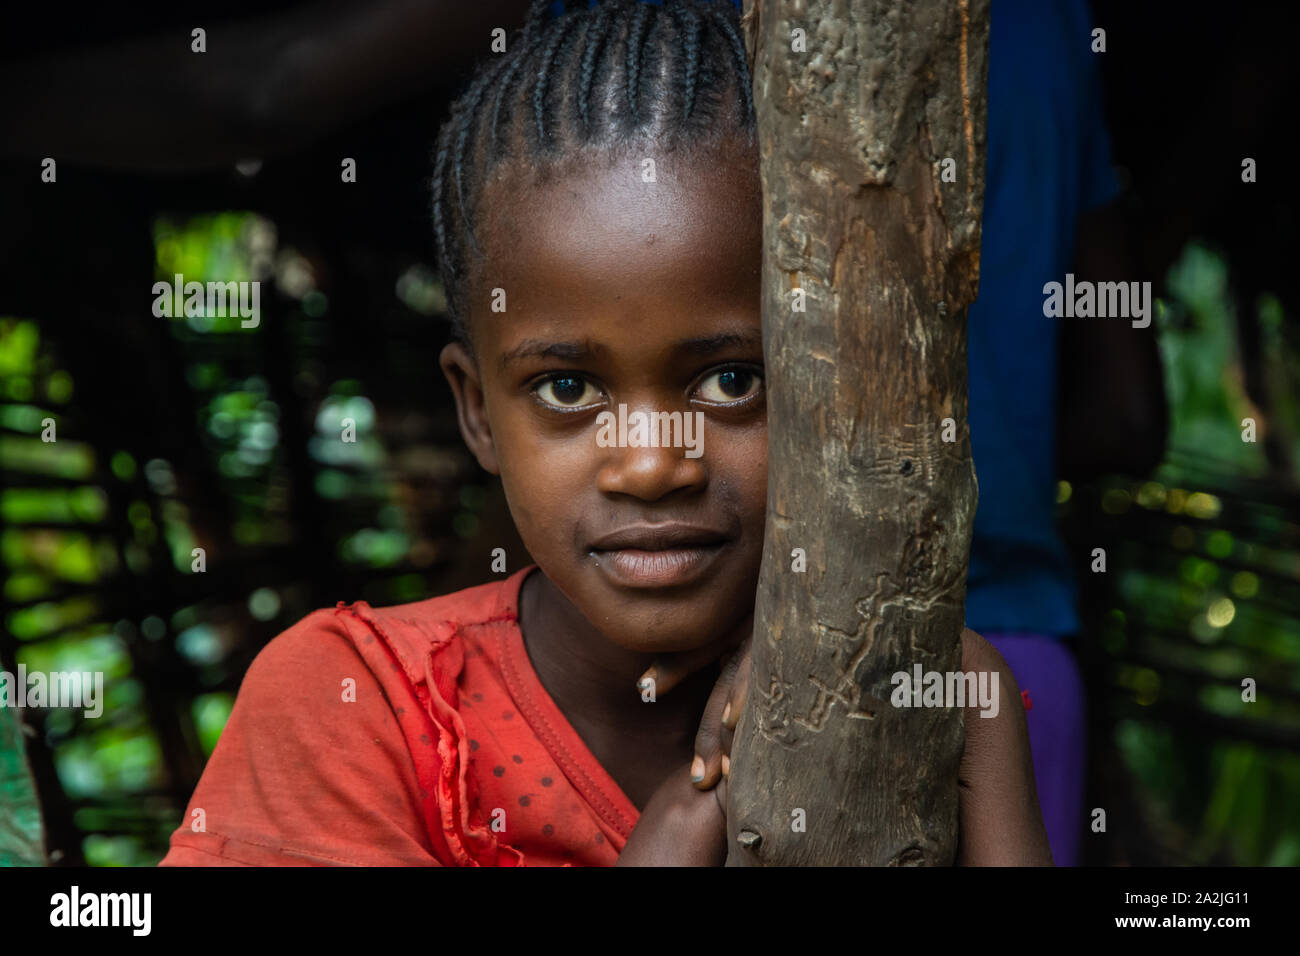 Jinka, Etiopia - Nov 2018: Ritratto di giovane ragazza etiope appoggiata sul montante in legno Foto Stock